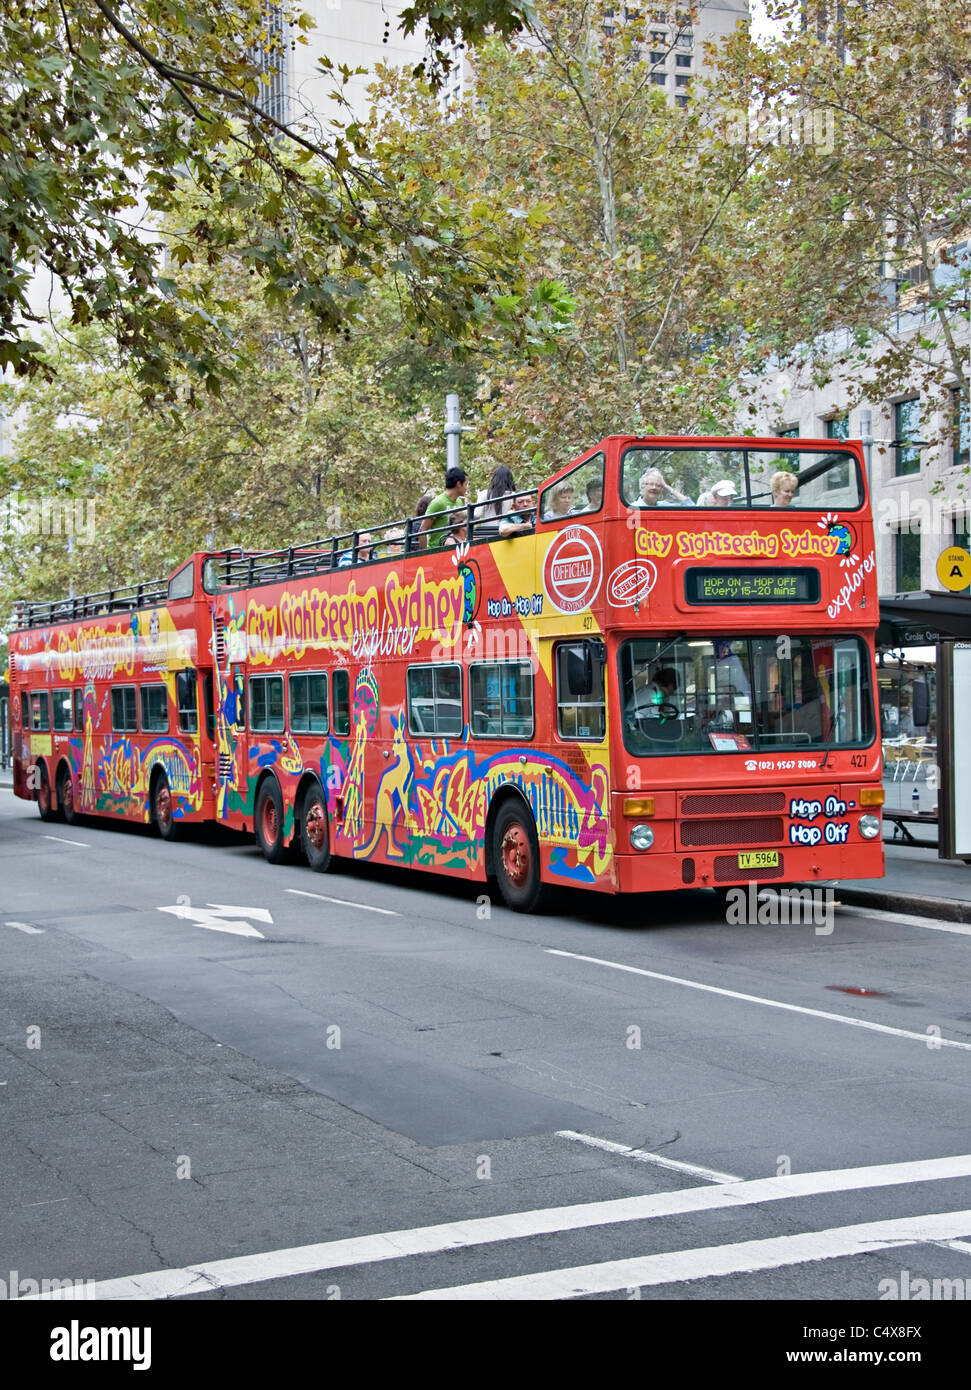 Ouvert rouge double tête parée à l'arrêt des bus touristiques dans le centre-ville de Sydney par Circular Quay New South Wales Australie Banque D'Images